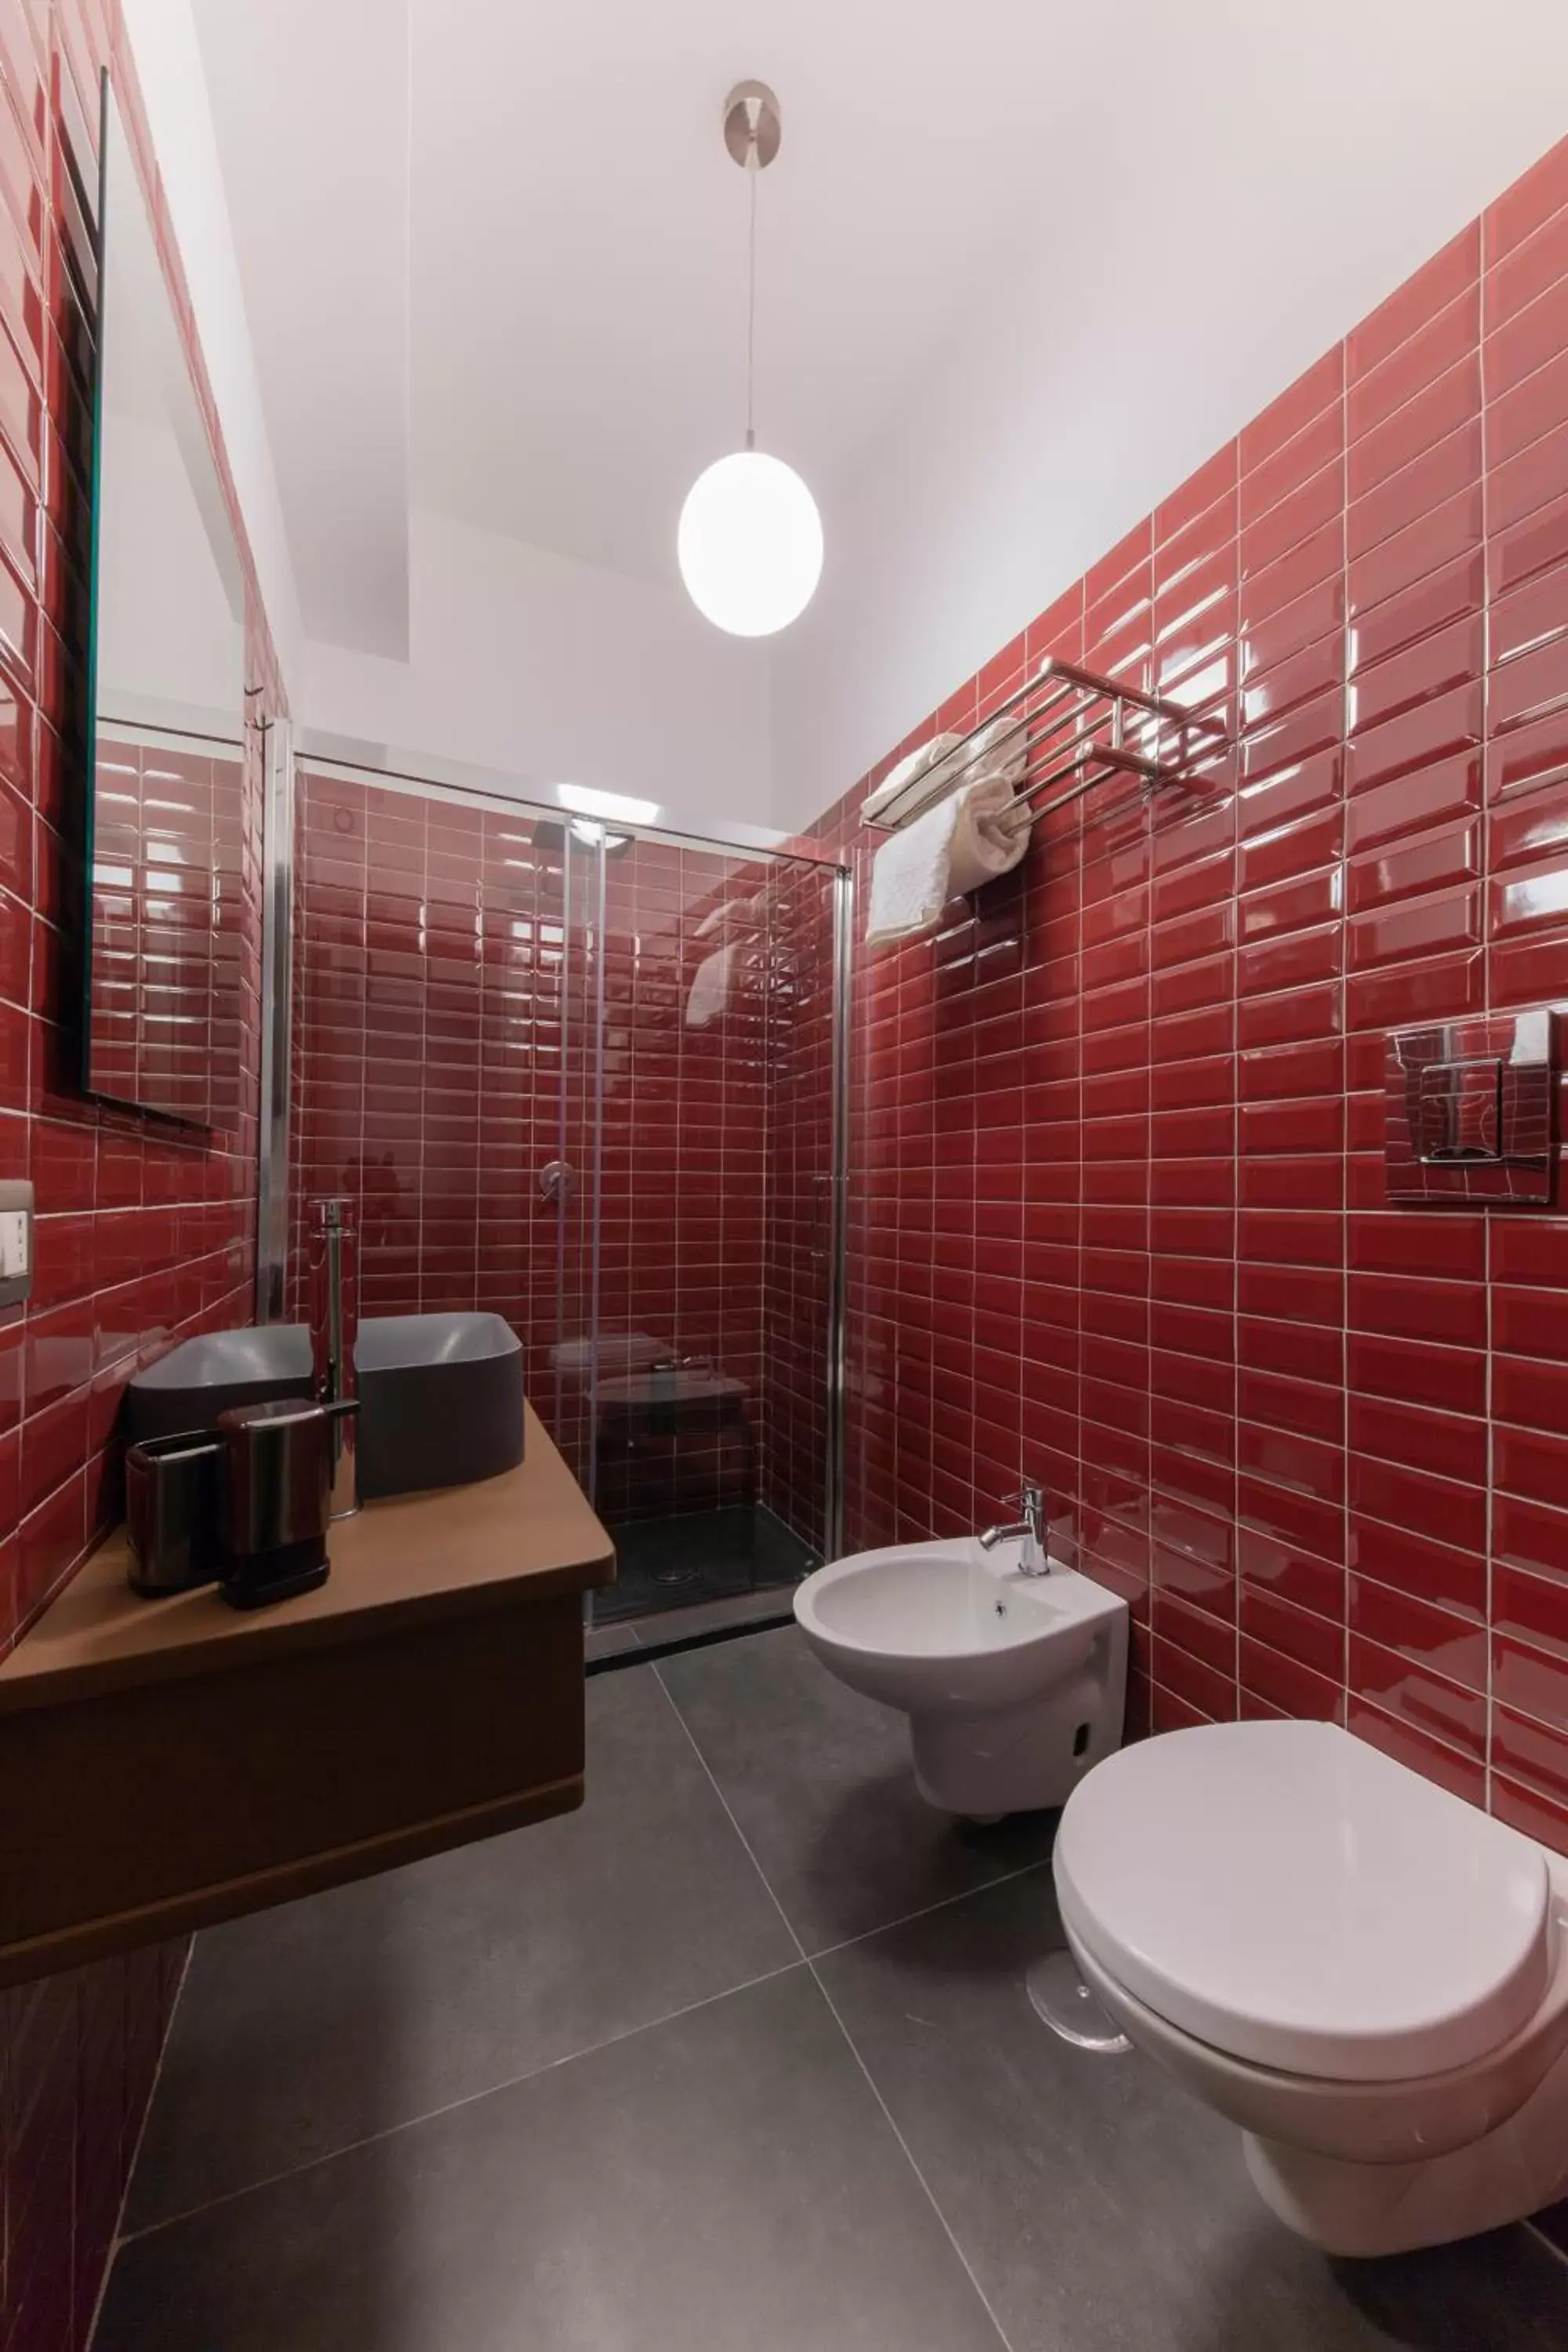 Bathroom in Cloister inn